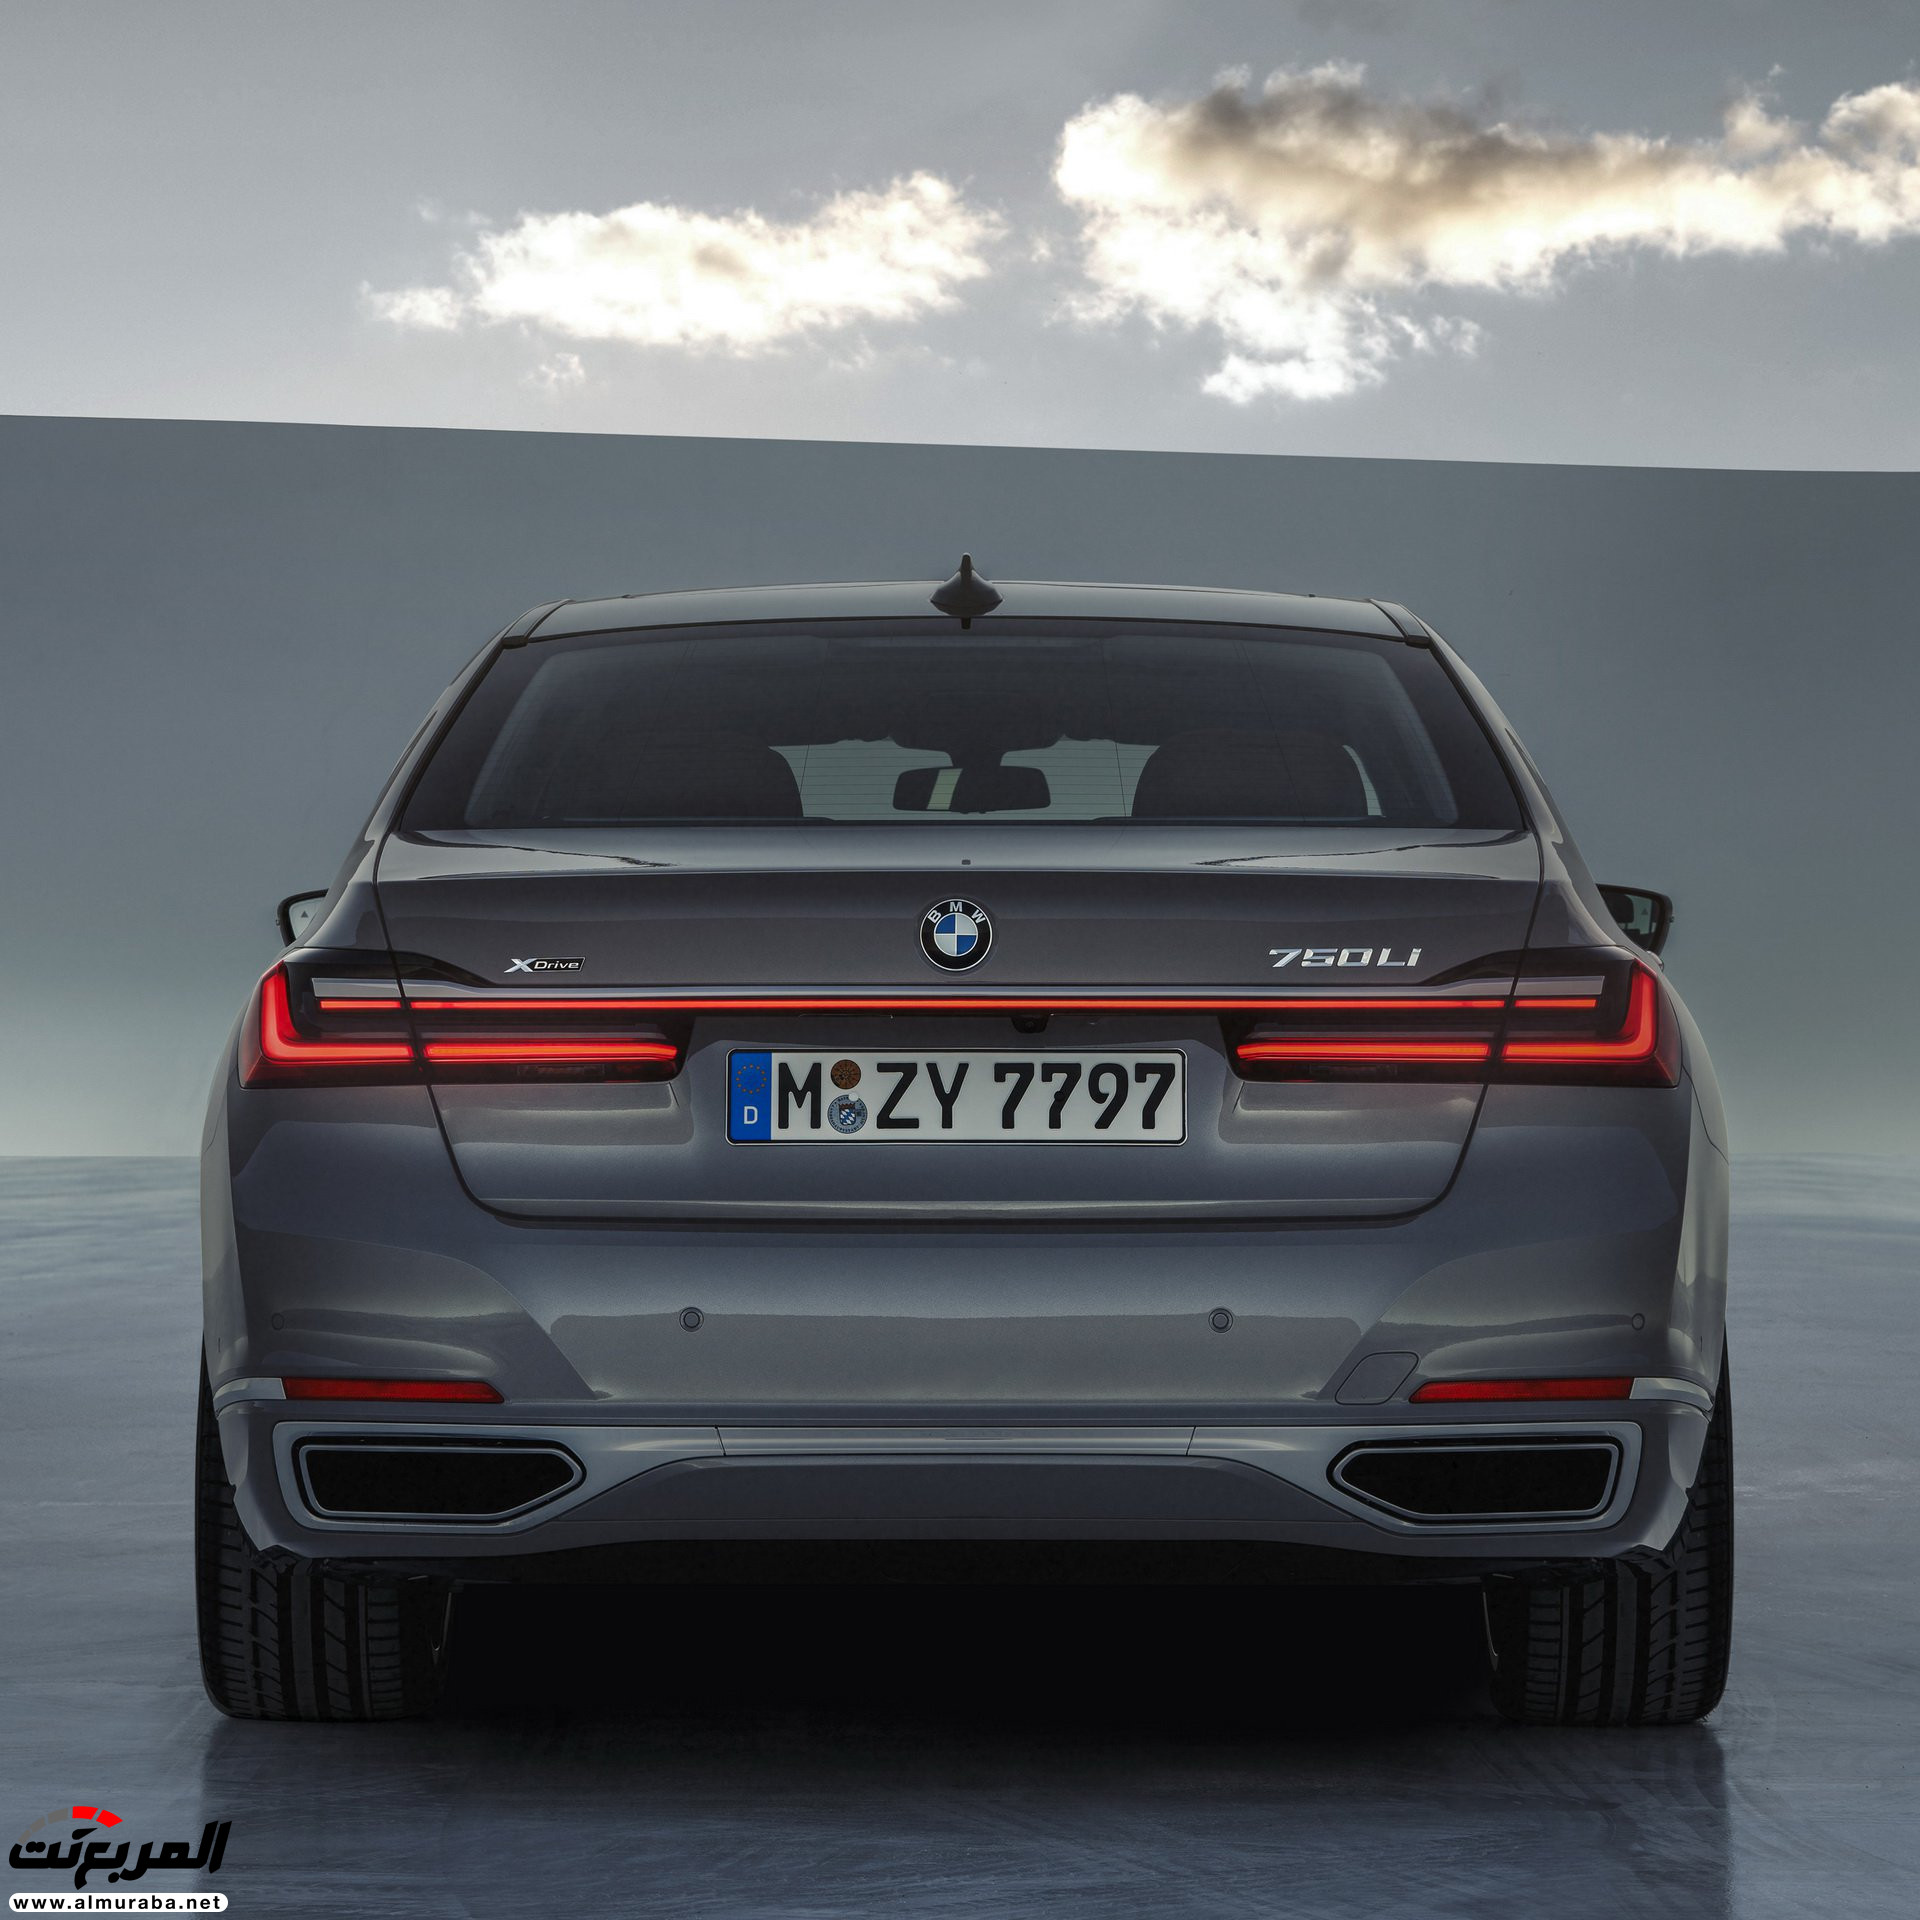 بي ام دبليو الفئة السابعة 2020 المحدثة تكشف نفسها رسمياً "صور ومواصفات" BMW 7 Series 267